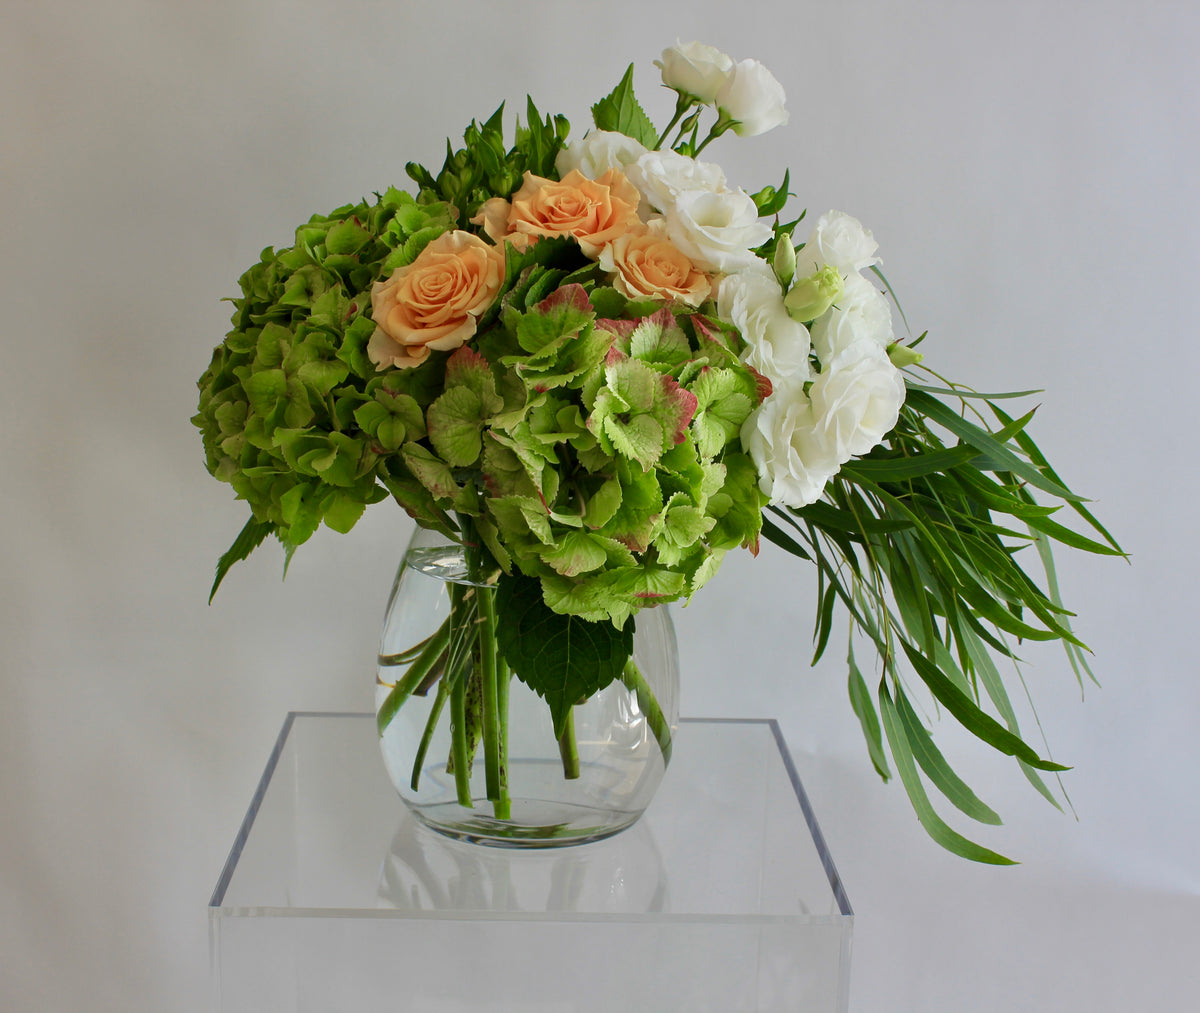 Vase of flowers simple and elegant